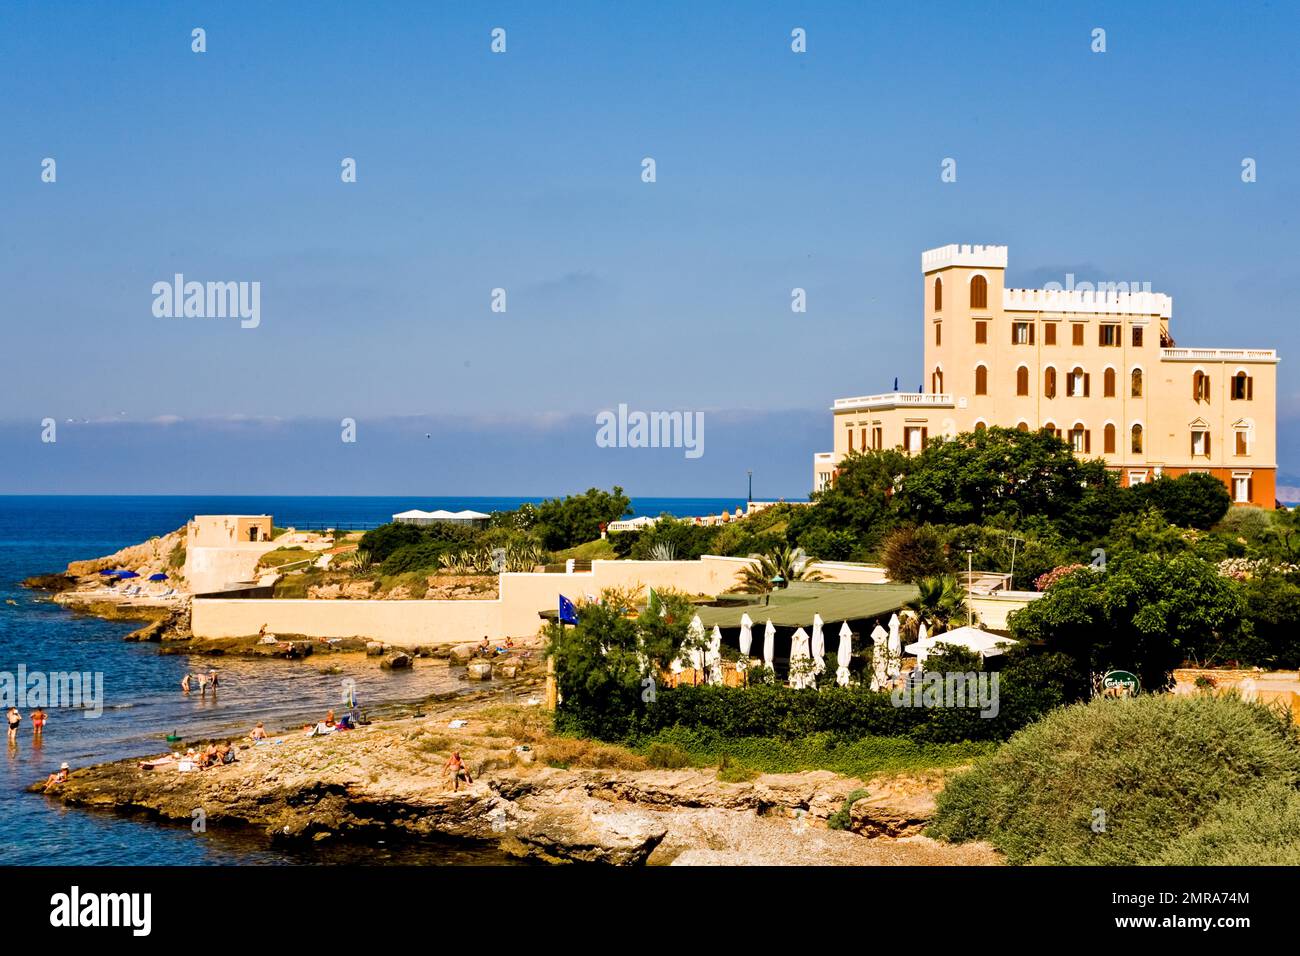 Villa Las Tronas, once a summer villa of the Italian royal family, Sardinia,  Italy, Europe Stock Photo - Alamy